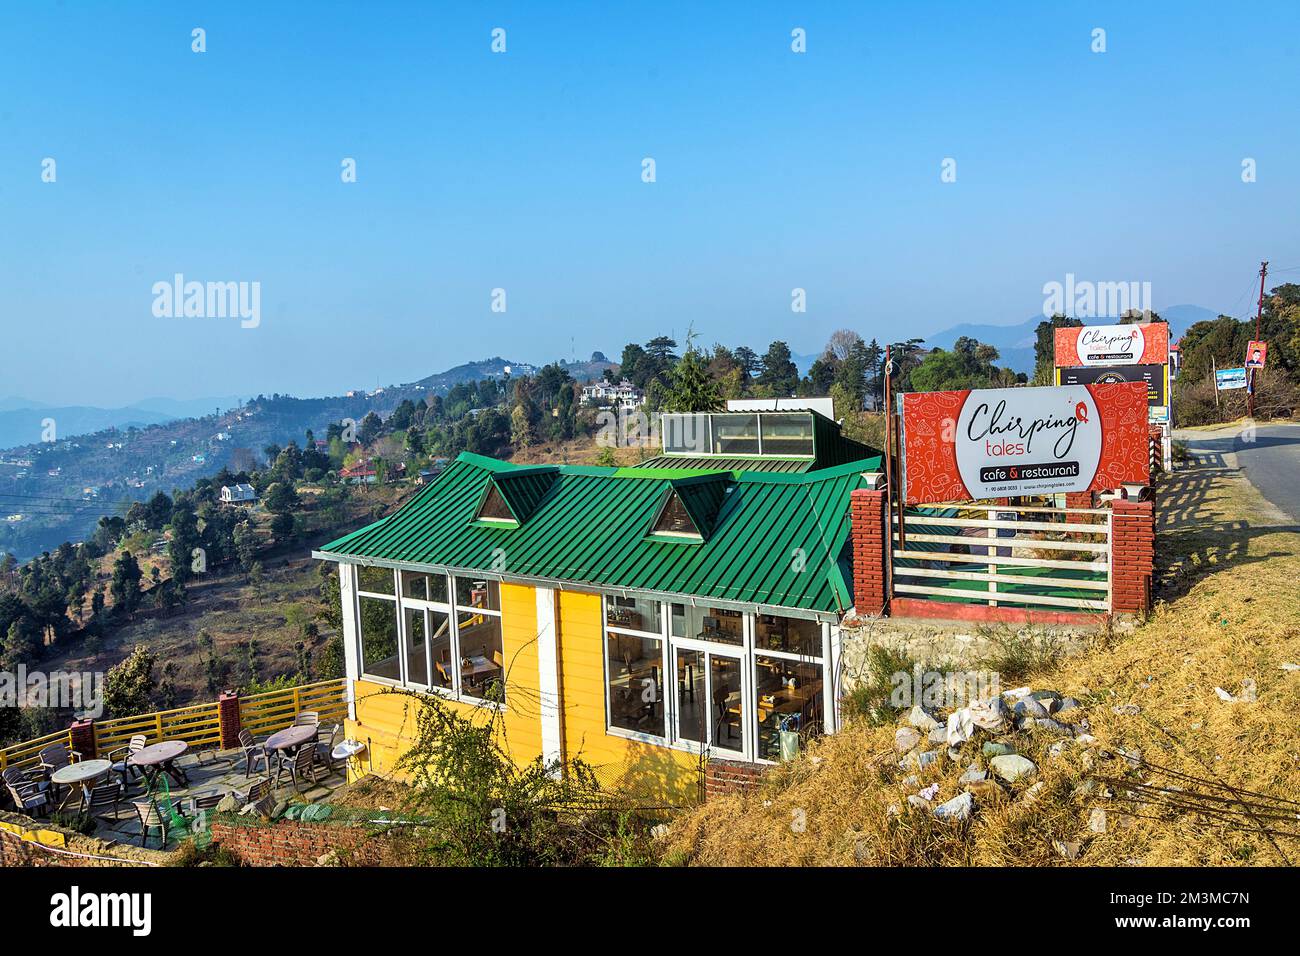 Chirping restaurant, Mukteshwar, Nainital, Kumaon, Uttarakhand, India Stock Photo